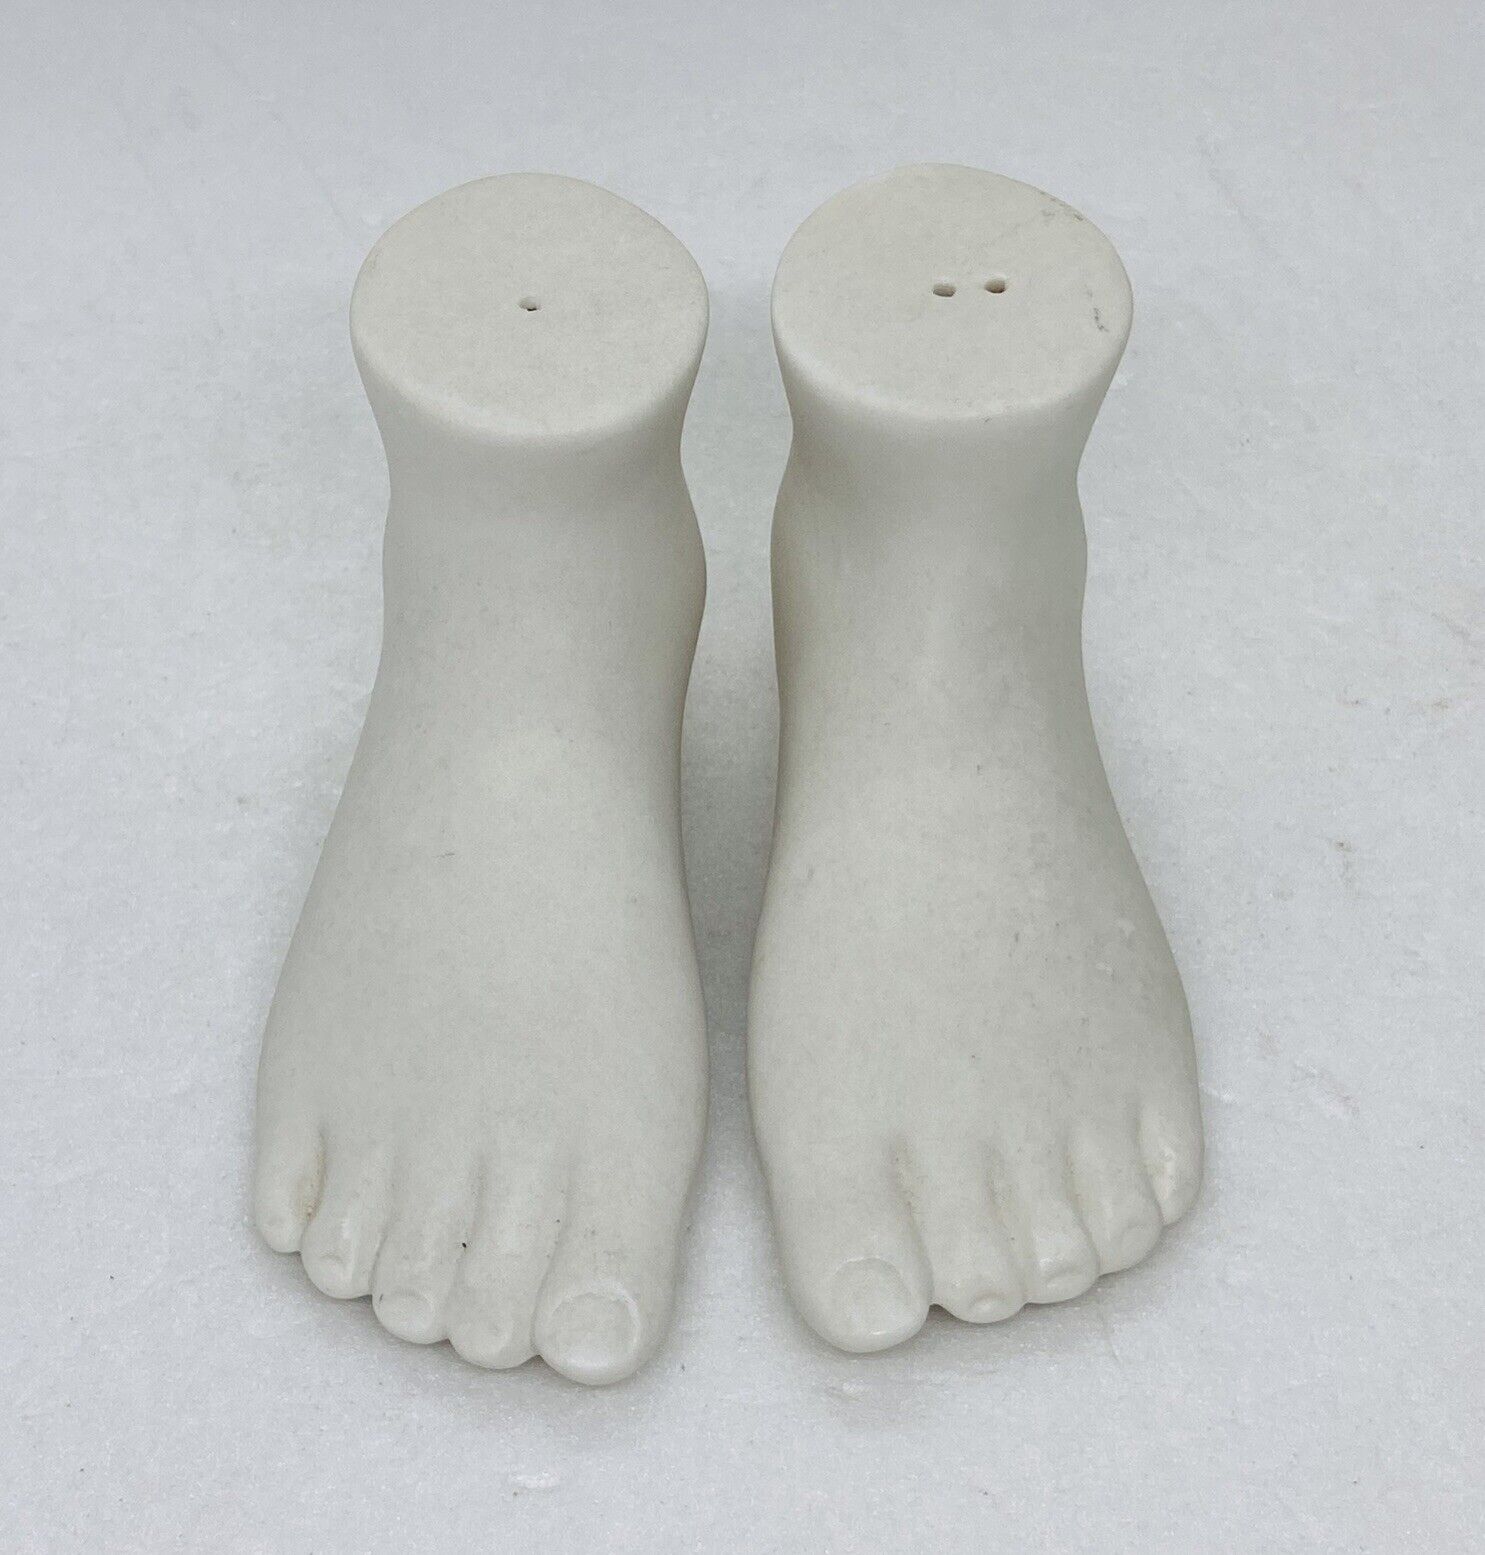 Rare 1970s Ceramic Bare Foot Salt Pepper Shaker Set White Pottery Art Decor 1